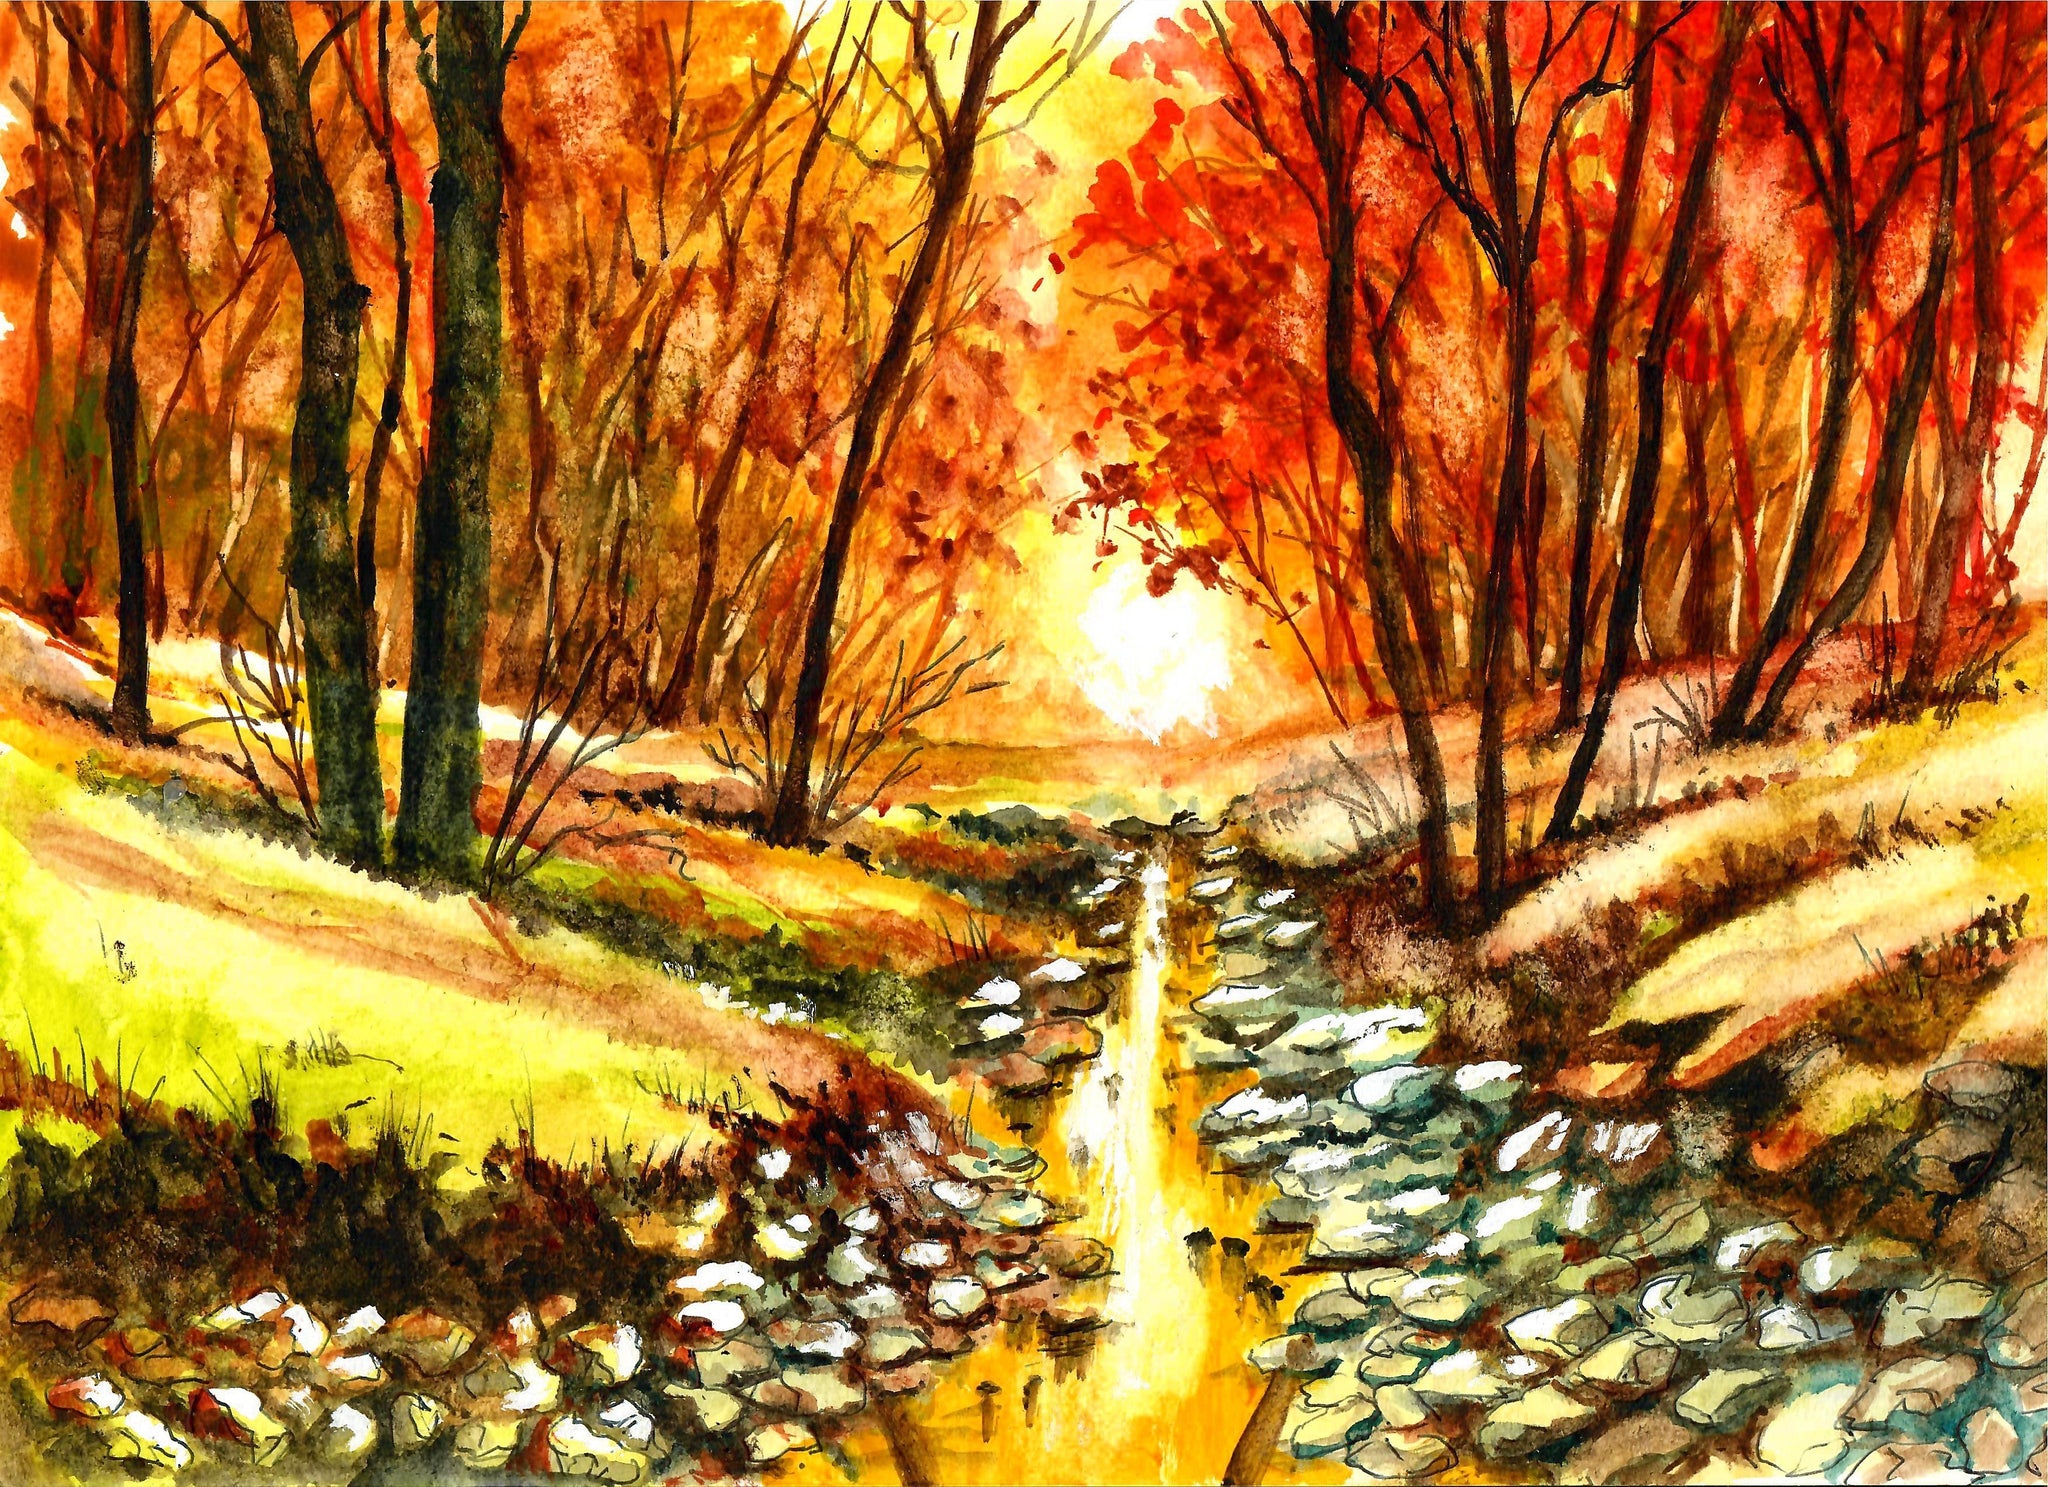 Nature - Rocky Creek In Autumn, Autumn Trees, Autumn Art, Forest Art, Beautiful Trees